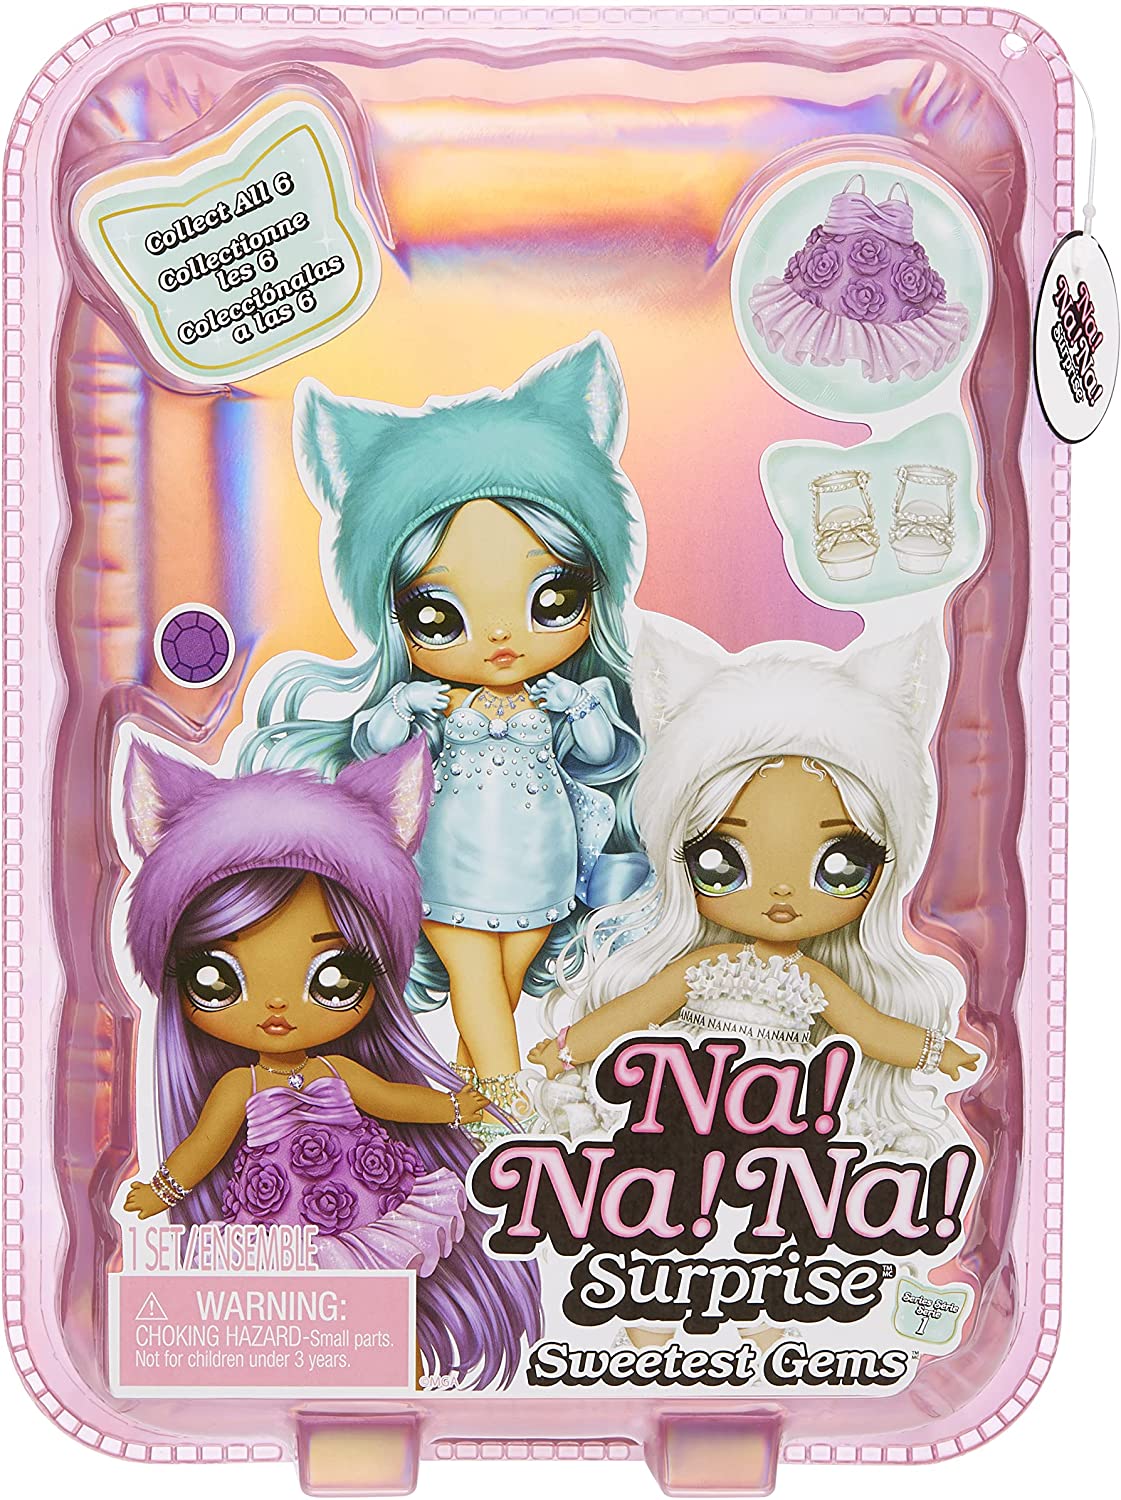 Na! Na! Na! Surprise Sweetest Gems dolls 